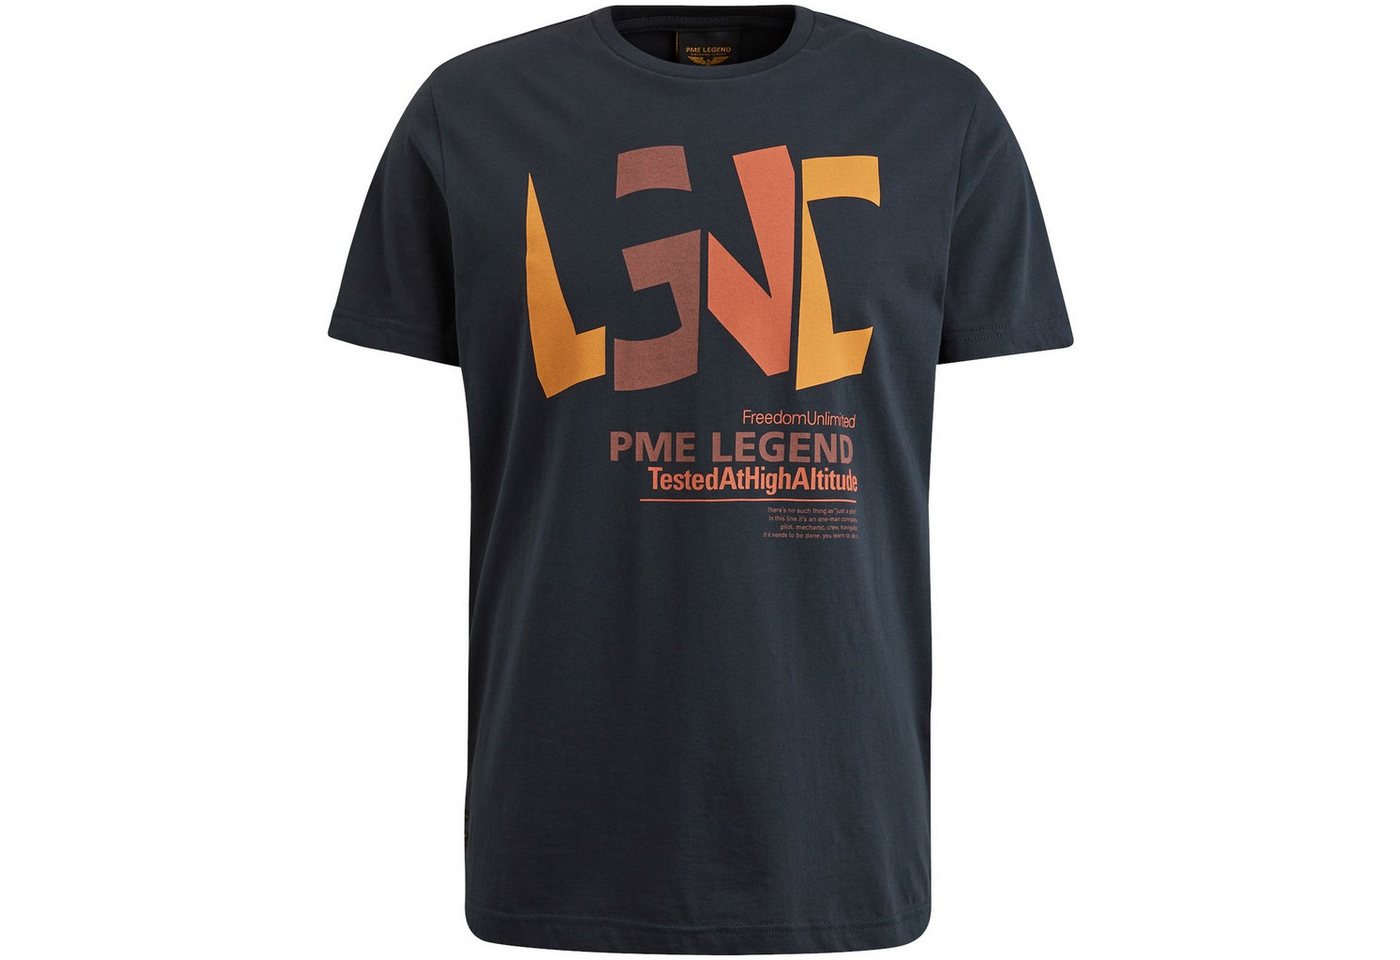 PME LEGEND T-Shirt von PME LEGEND